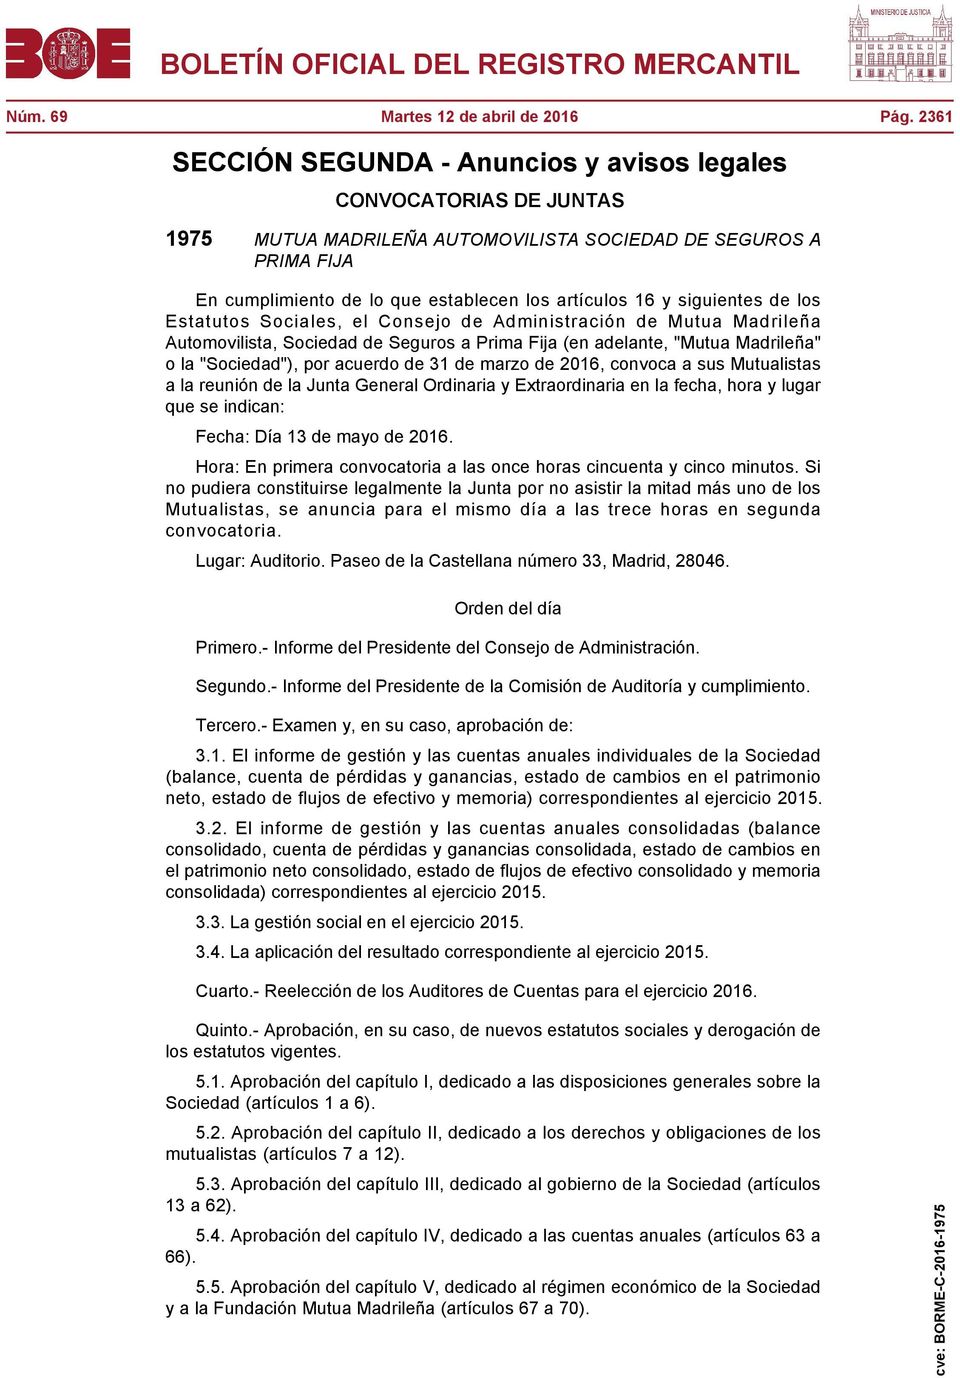 siguientes de los Estatutos Sociales, el Consejo de Administración de Mutua Madrileña Automovilista, Sociedad de Seguros a Prima Fija (en adelante, "Mutua Madrileña" o la "Sociedad"), por acuerdo de